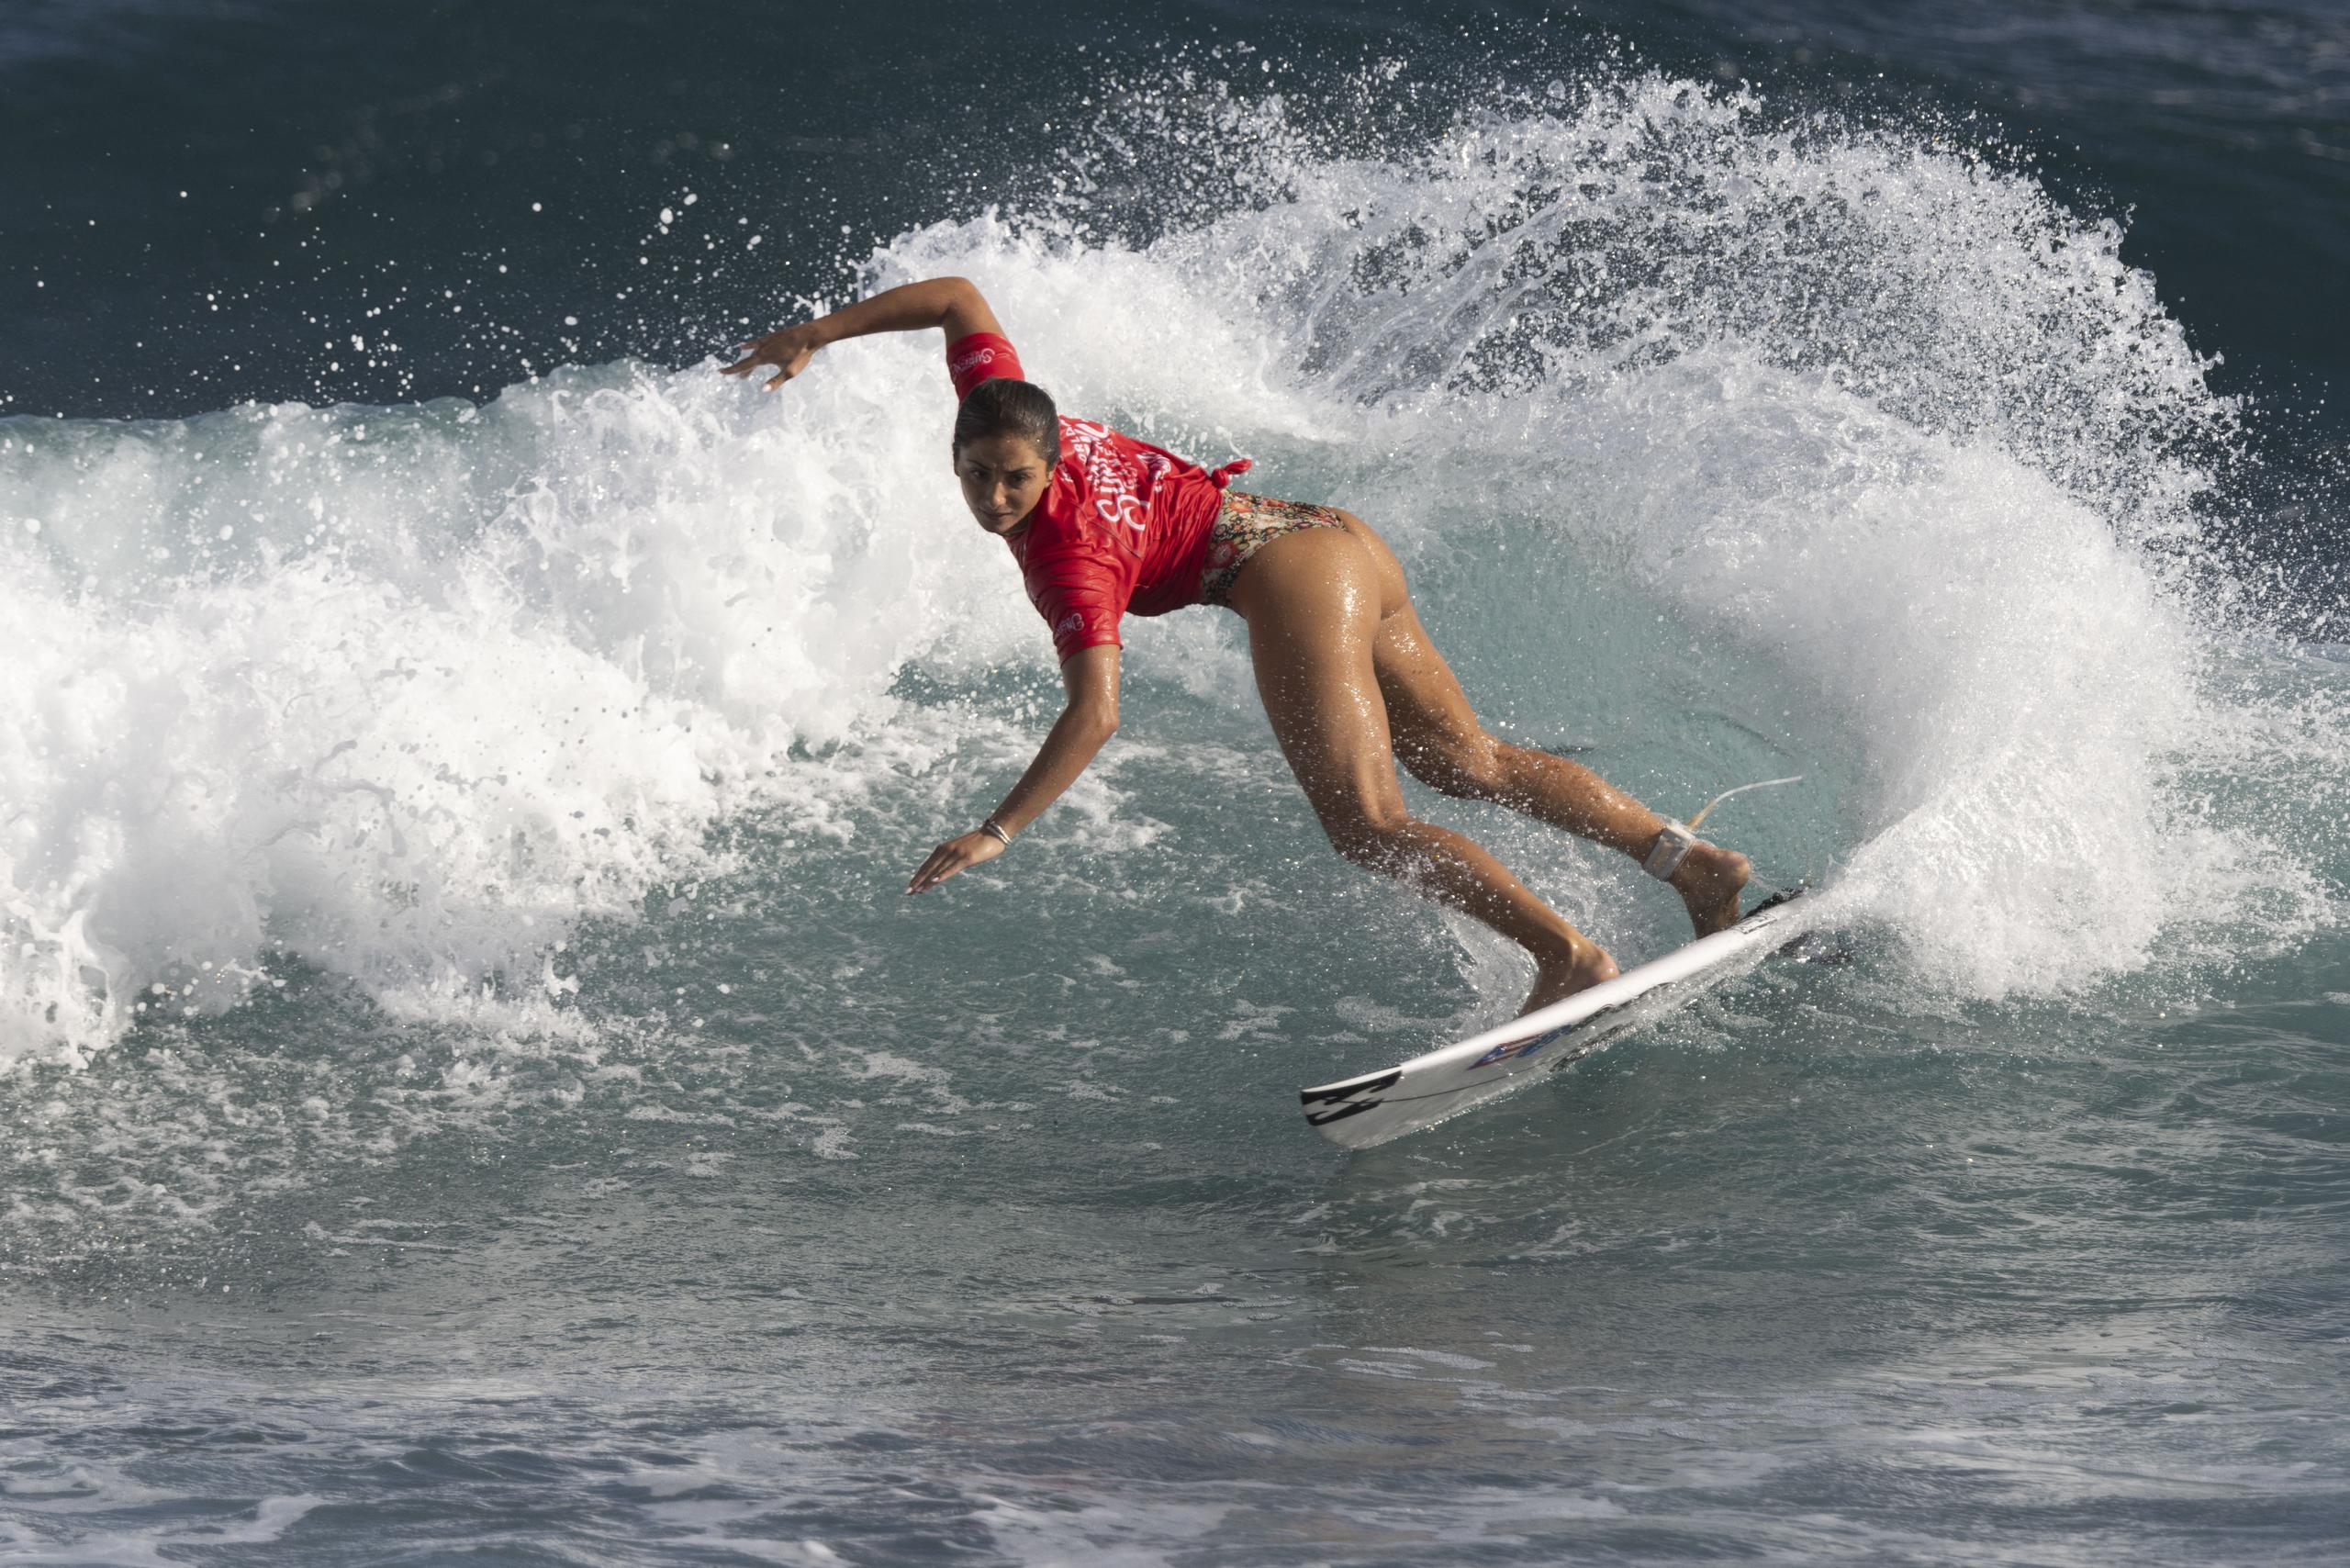 Havanna Cabrero concluyó su participación en los "World Surfing Games" en Arecibo.